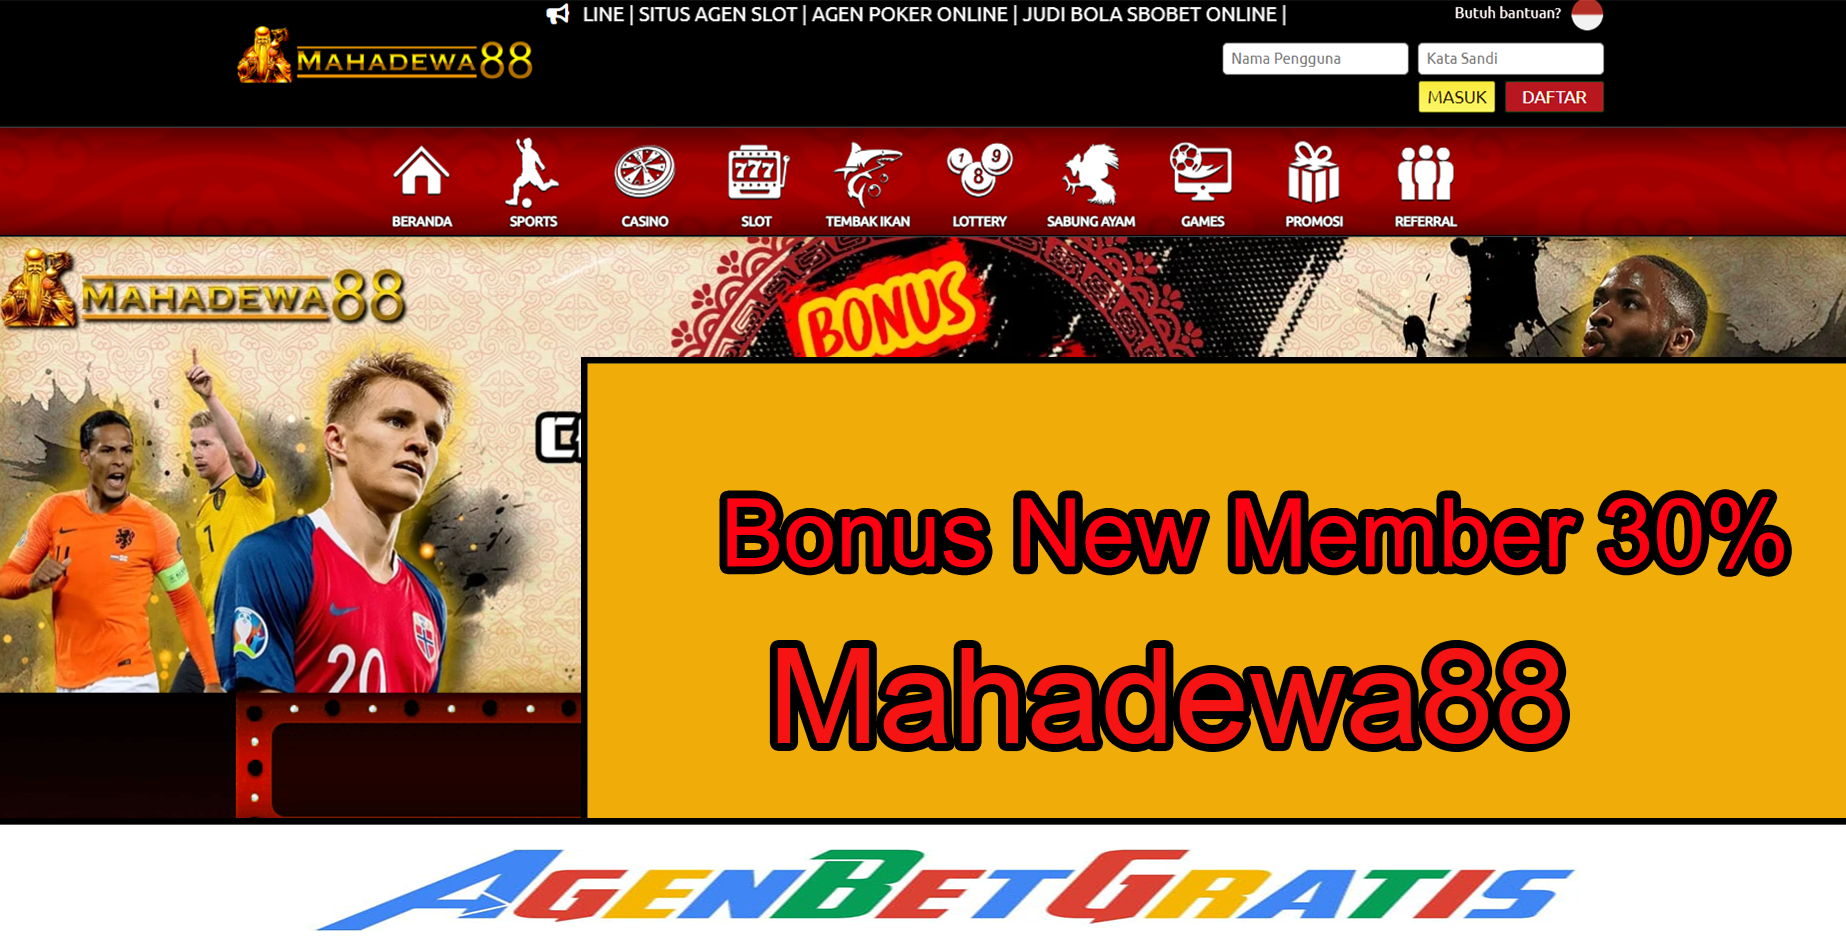 MAHADEWA88 - BONUS NEW MEMBER 30%